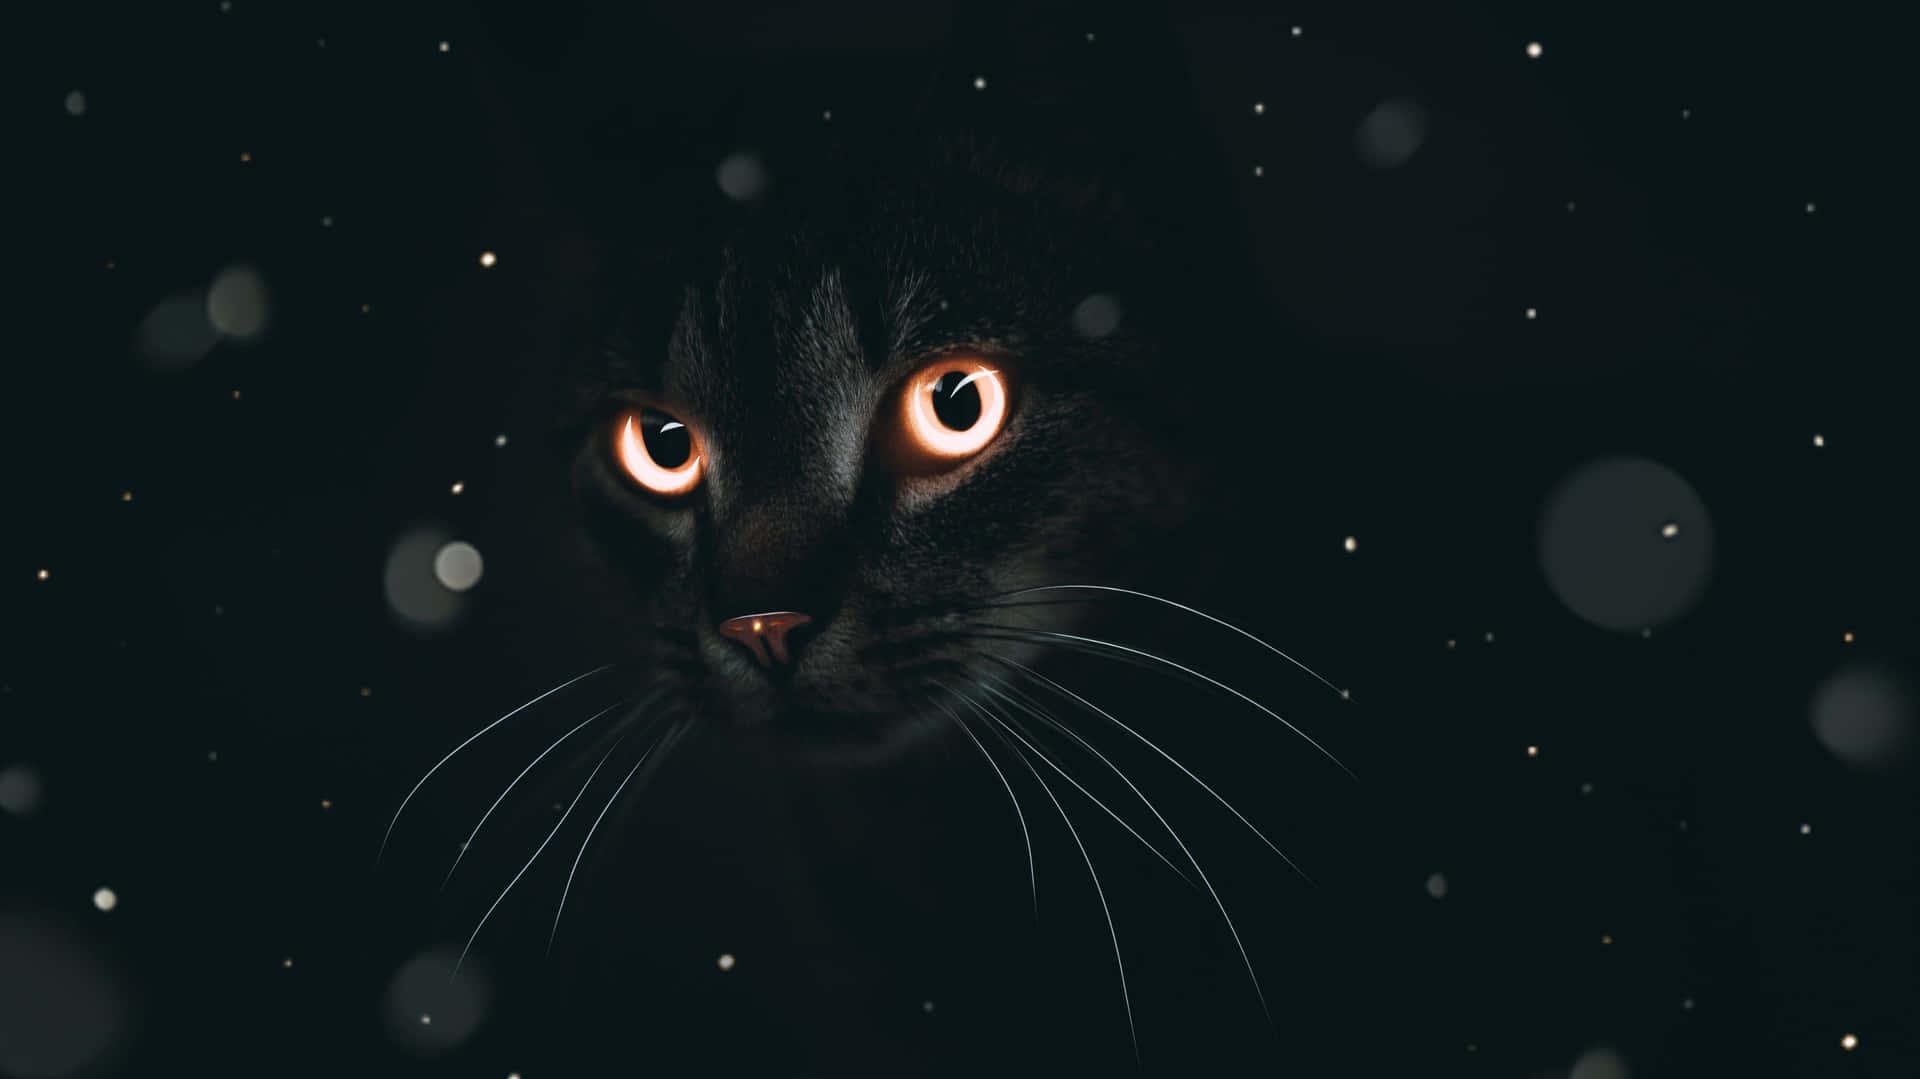 Free download Download Black Aesthetic Cute Cat PFP Wallpaper ...